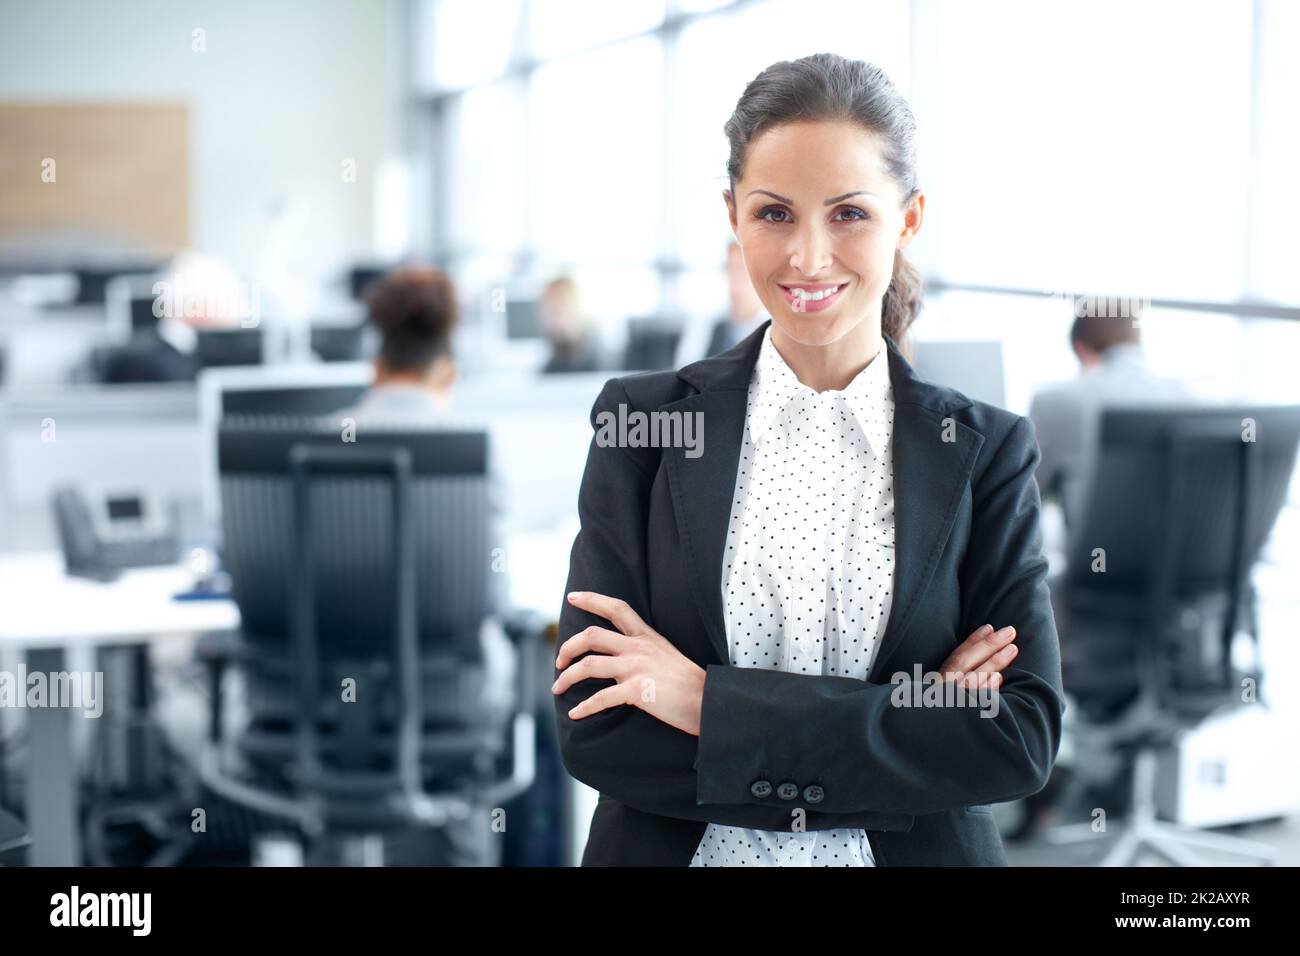 Selbstbewusst in ihrer beruflichen Entscheidung. Attraktive junge Geschäftsfrau, die selbstbewusst im Büro steht - Porträt. Stockfoto